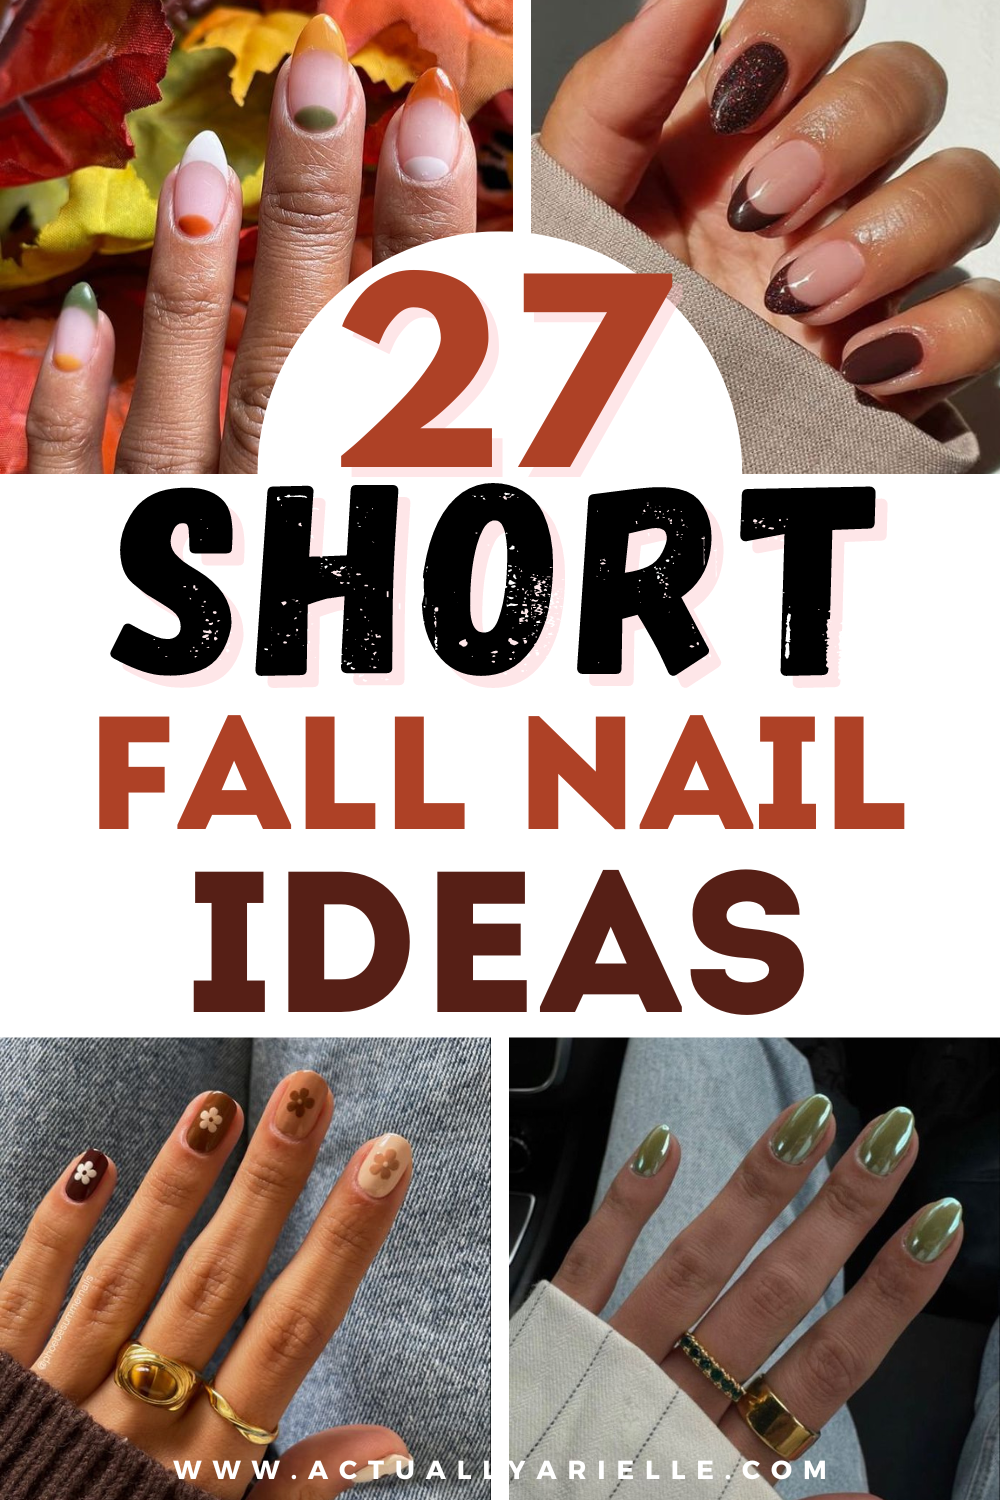 Short Nail Designs: Nail Art Designs for Short Nails to Try #nailart |  Heart nails, Short nail designs, Stylish nails